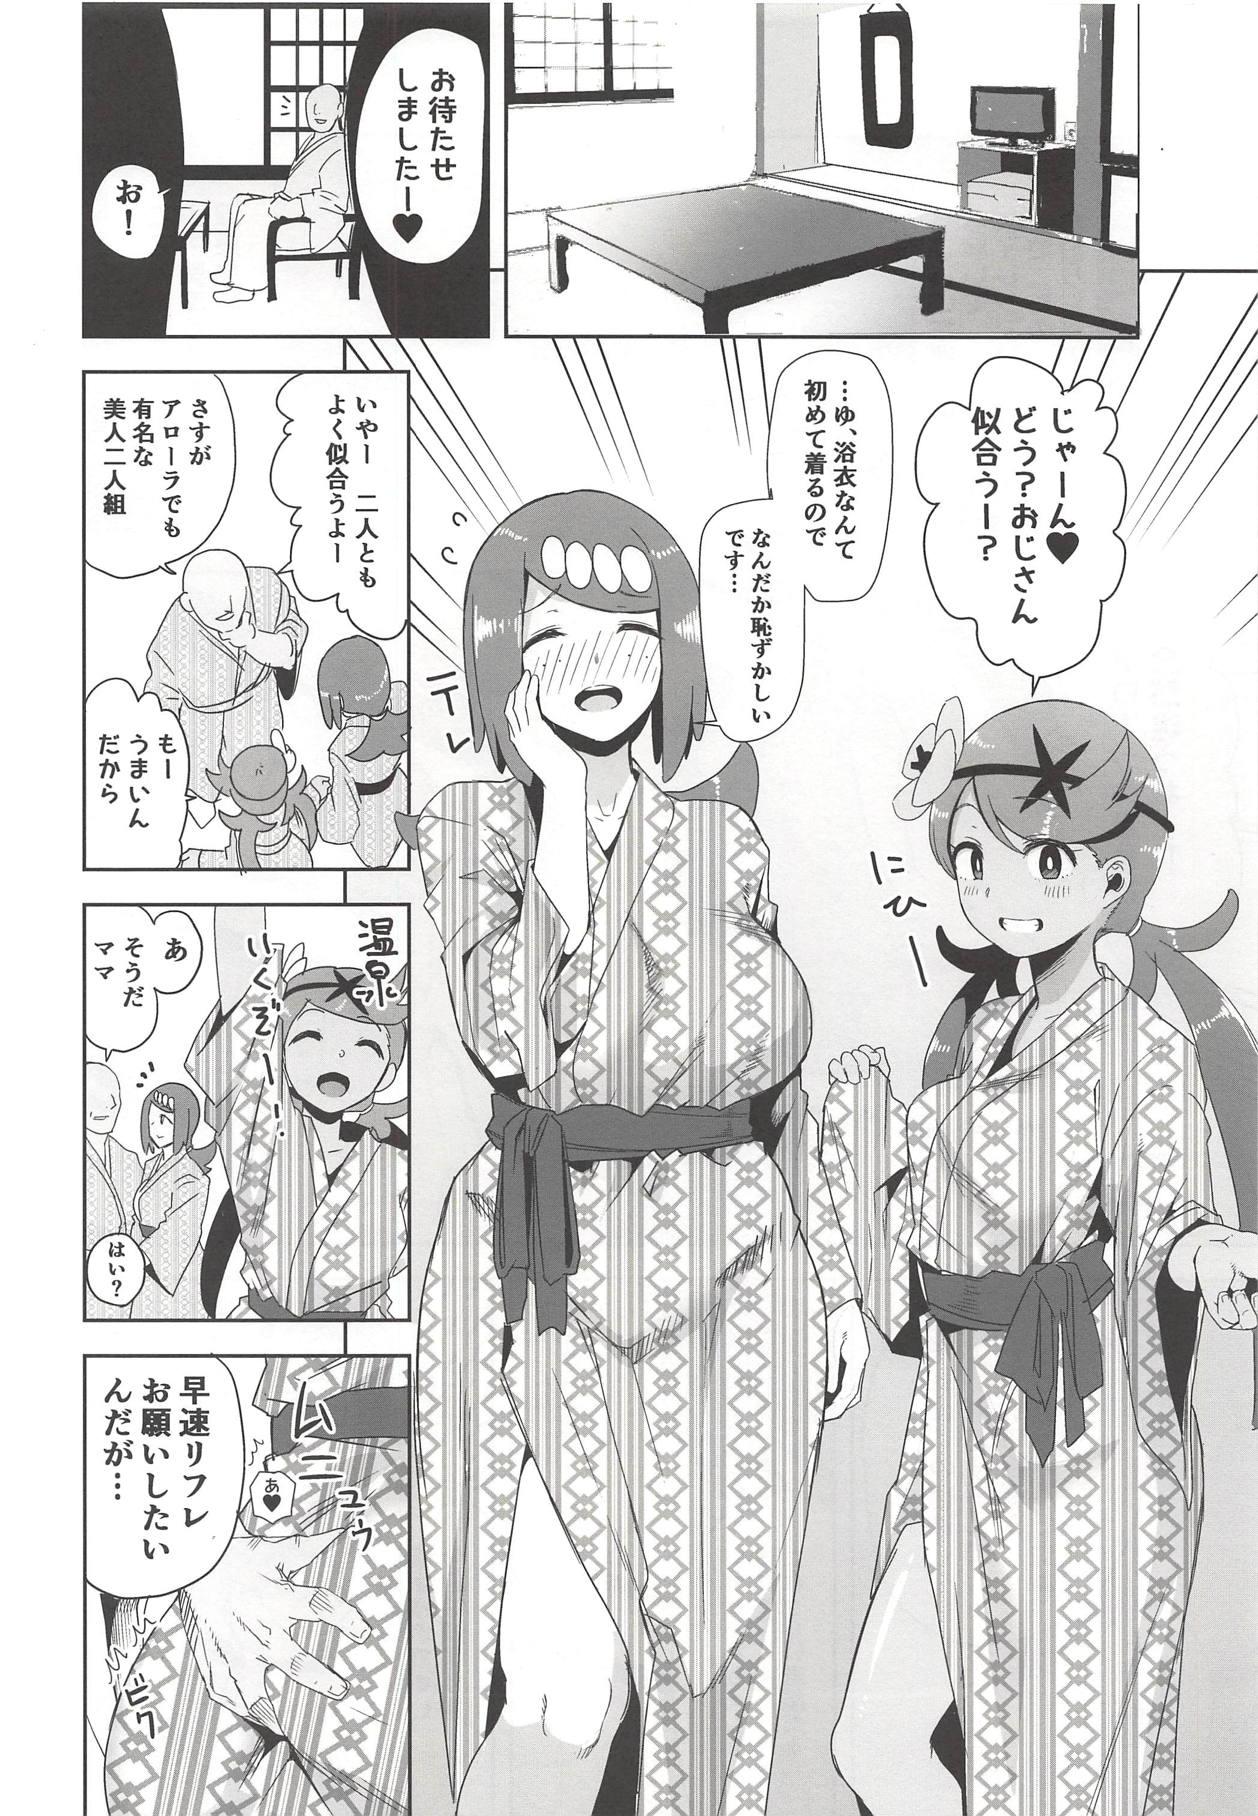 Farting Alola no Yoru no Sugata 2 - Pokemon From - Page 3